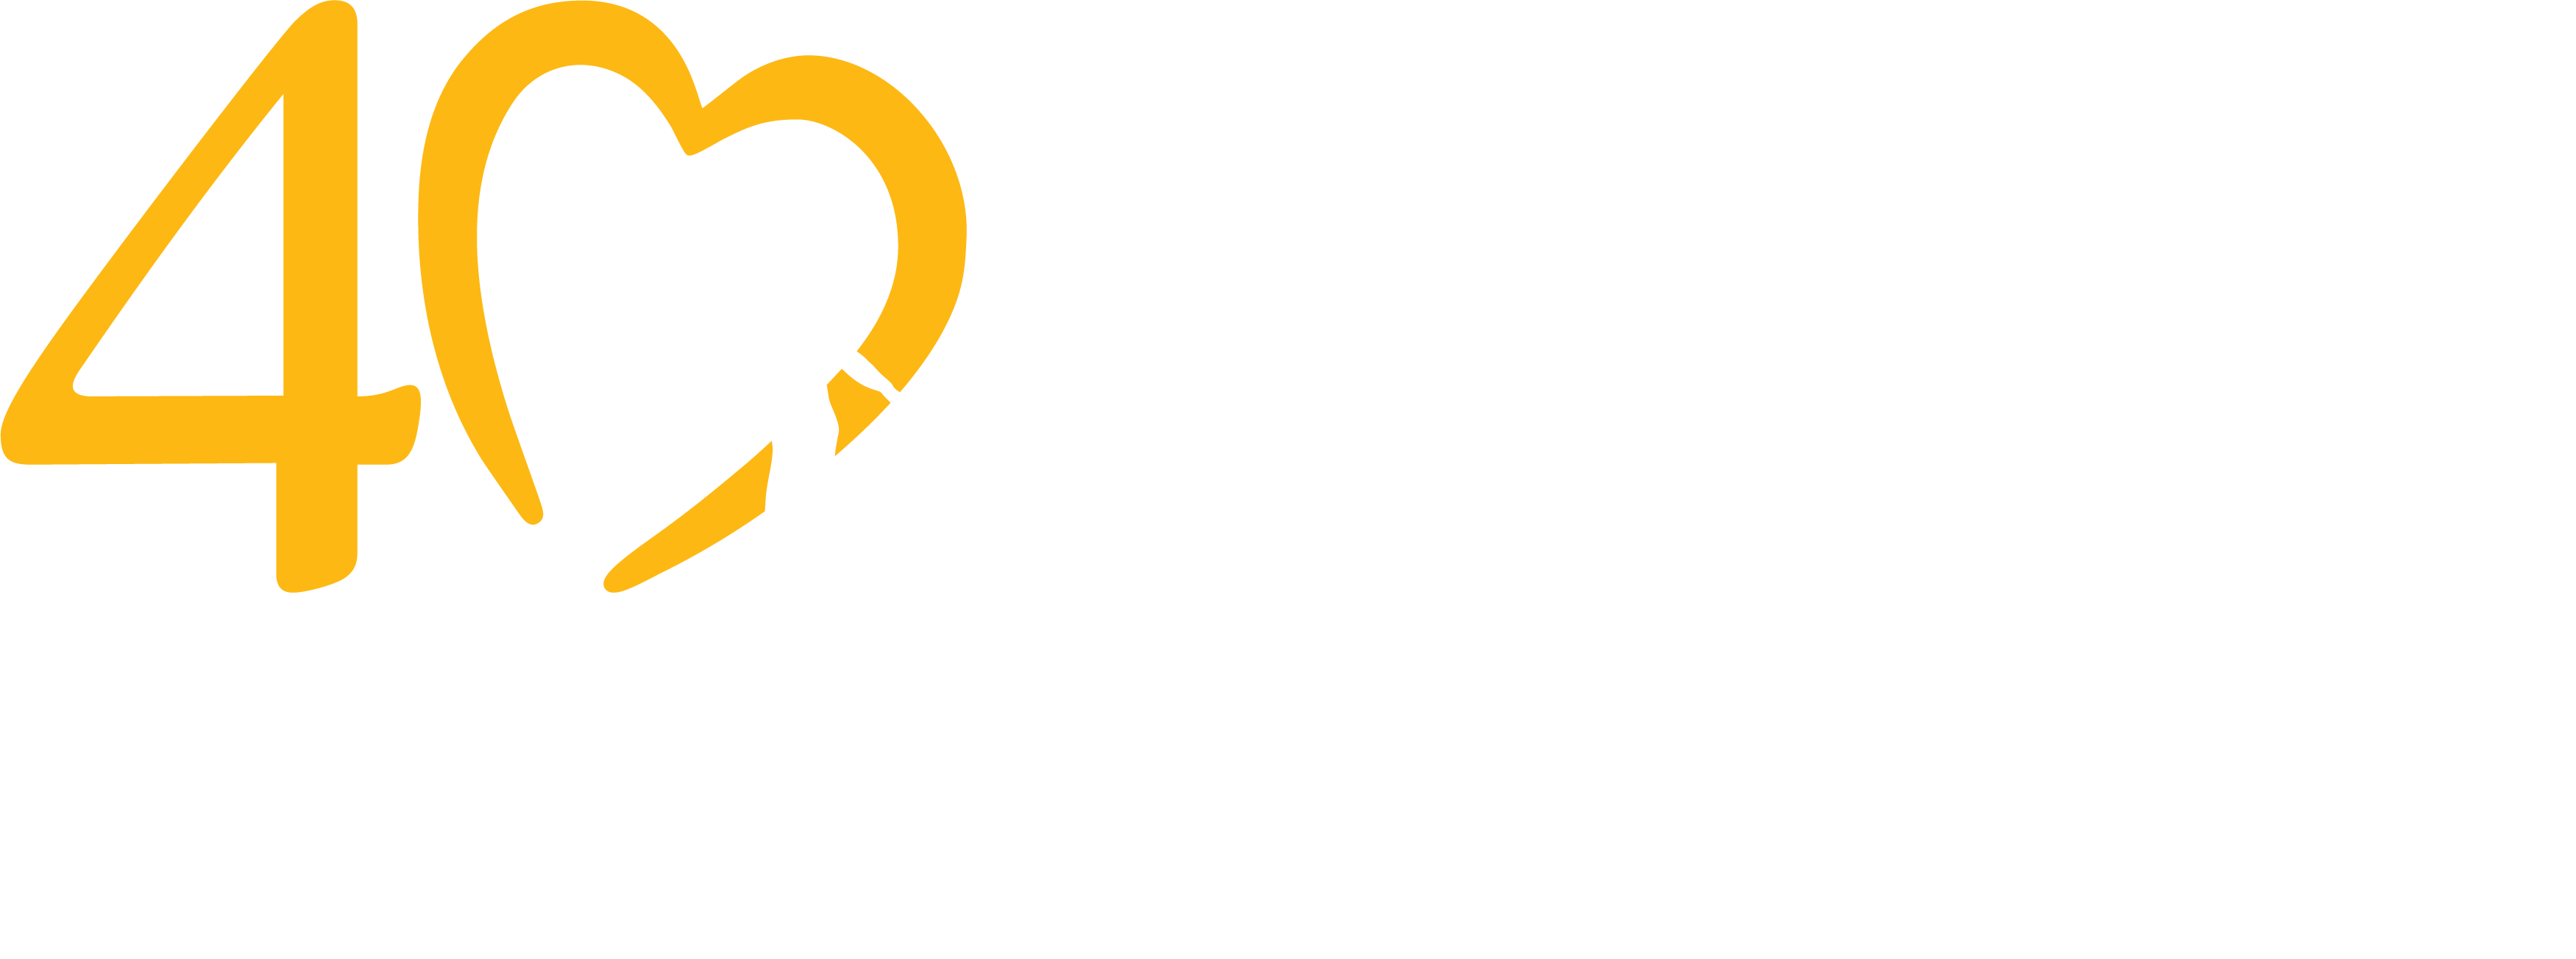 National Center for Missing & Exploited Children logo logo